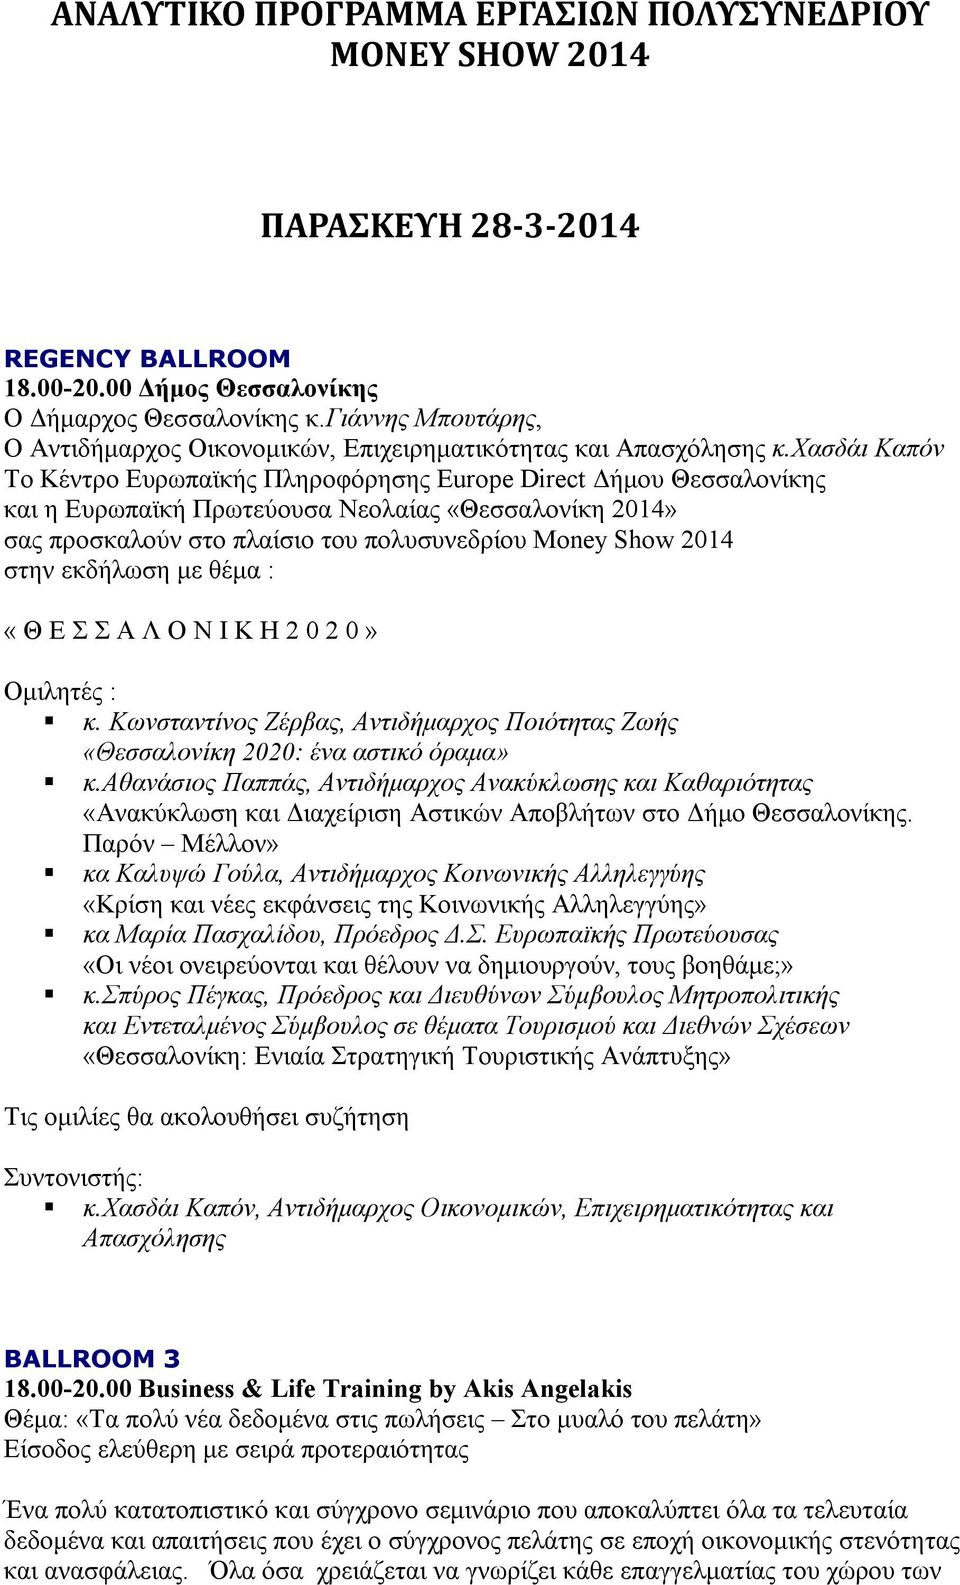 χασδάι Καπόν To Κέντρο Ευρωπαϊκής Πληροφόρησης Europe Direct Δήμου Θεσσαλονίκης και η Ευρωπαϊκή Πρωτεύουσα Νεολαίας «Θεσσαλονίκη 2014» σας προσκαλούν στο πλαίσιο του πολυσυνεδρίου Money Show 2014